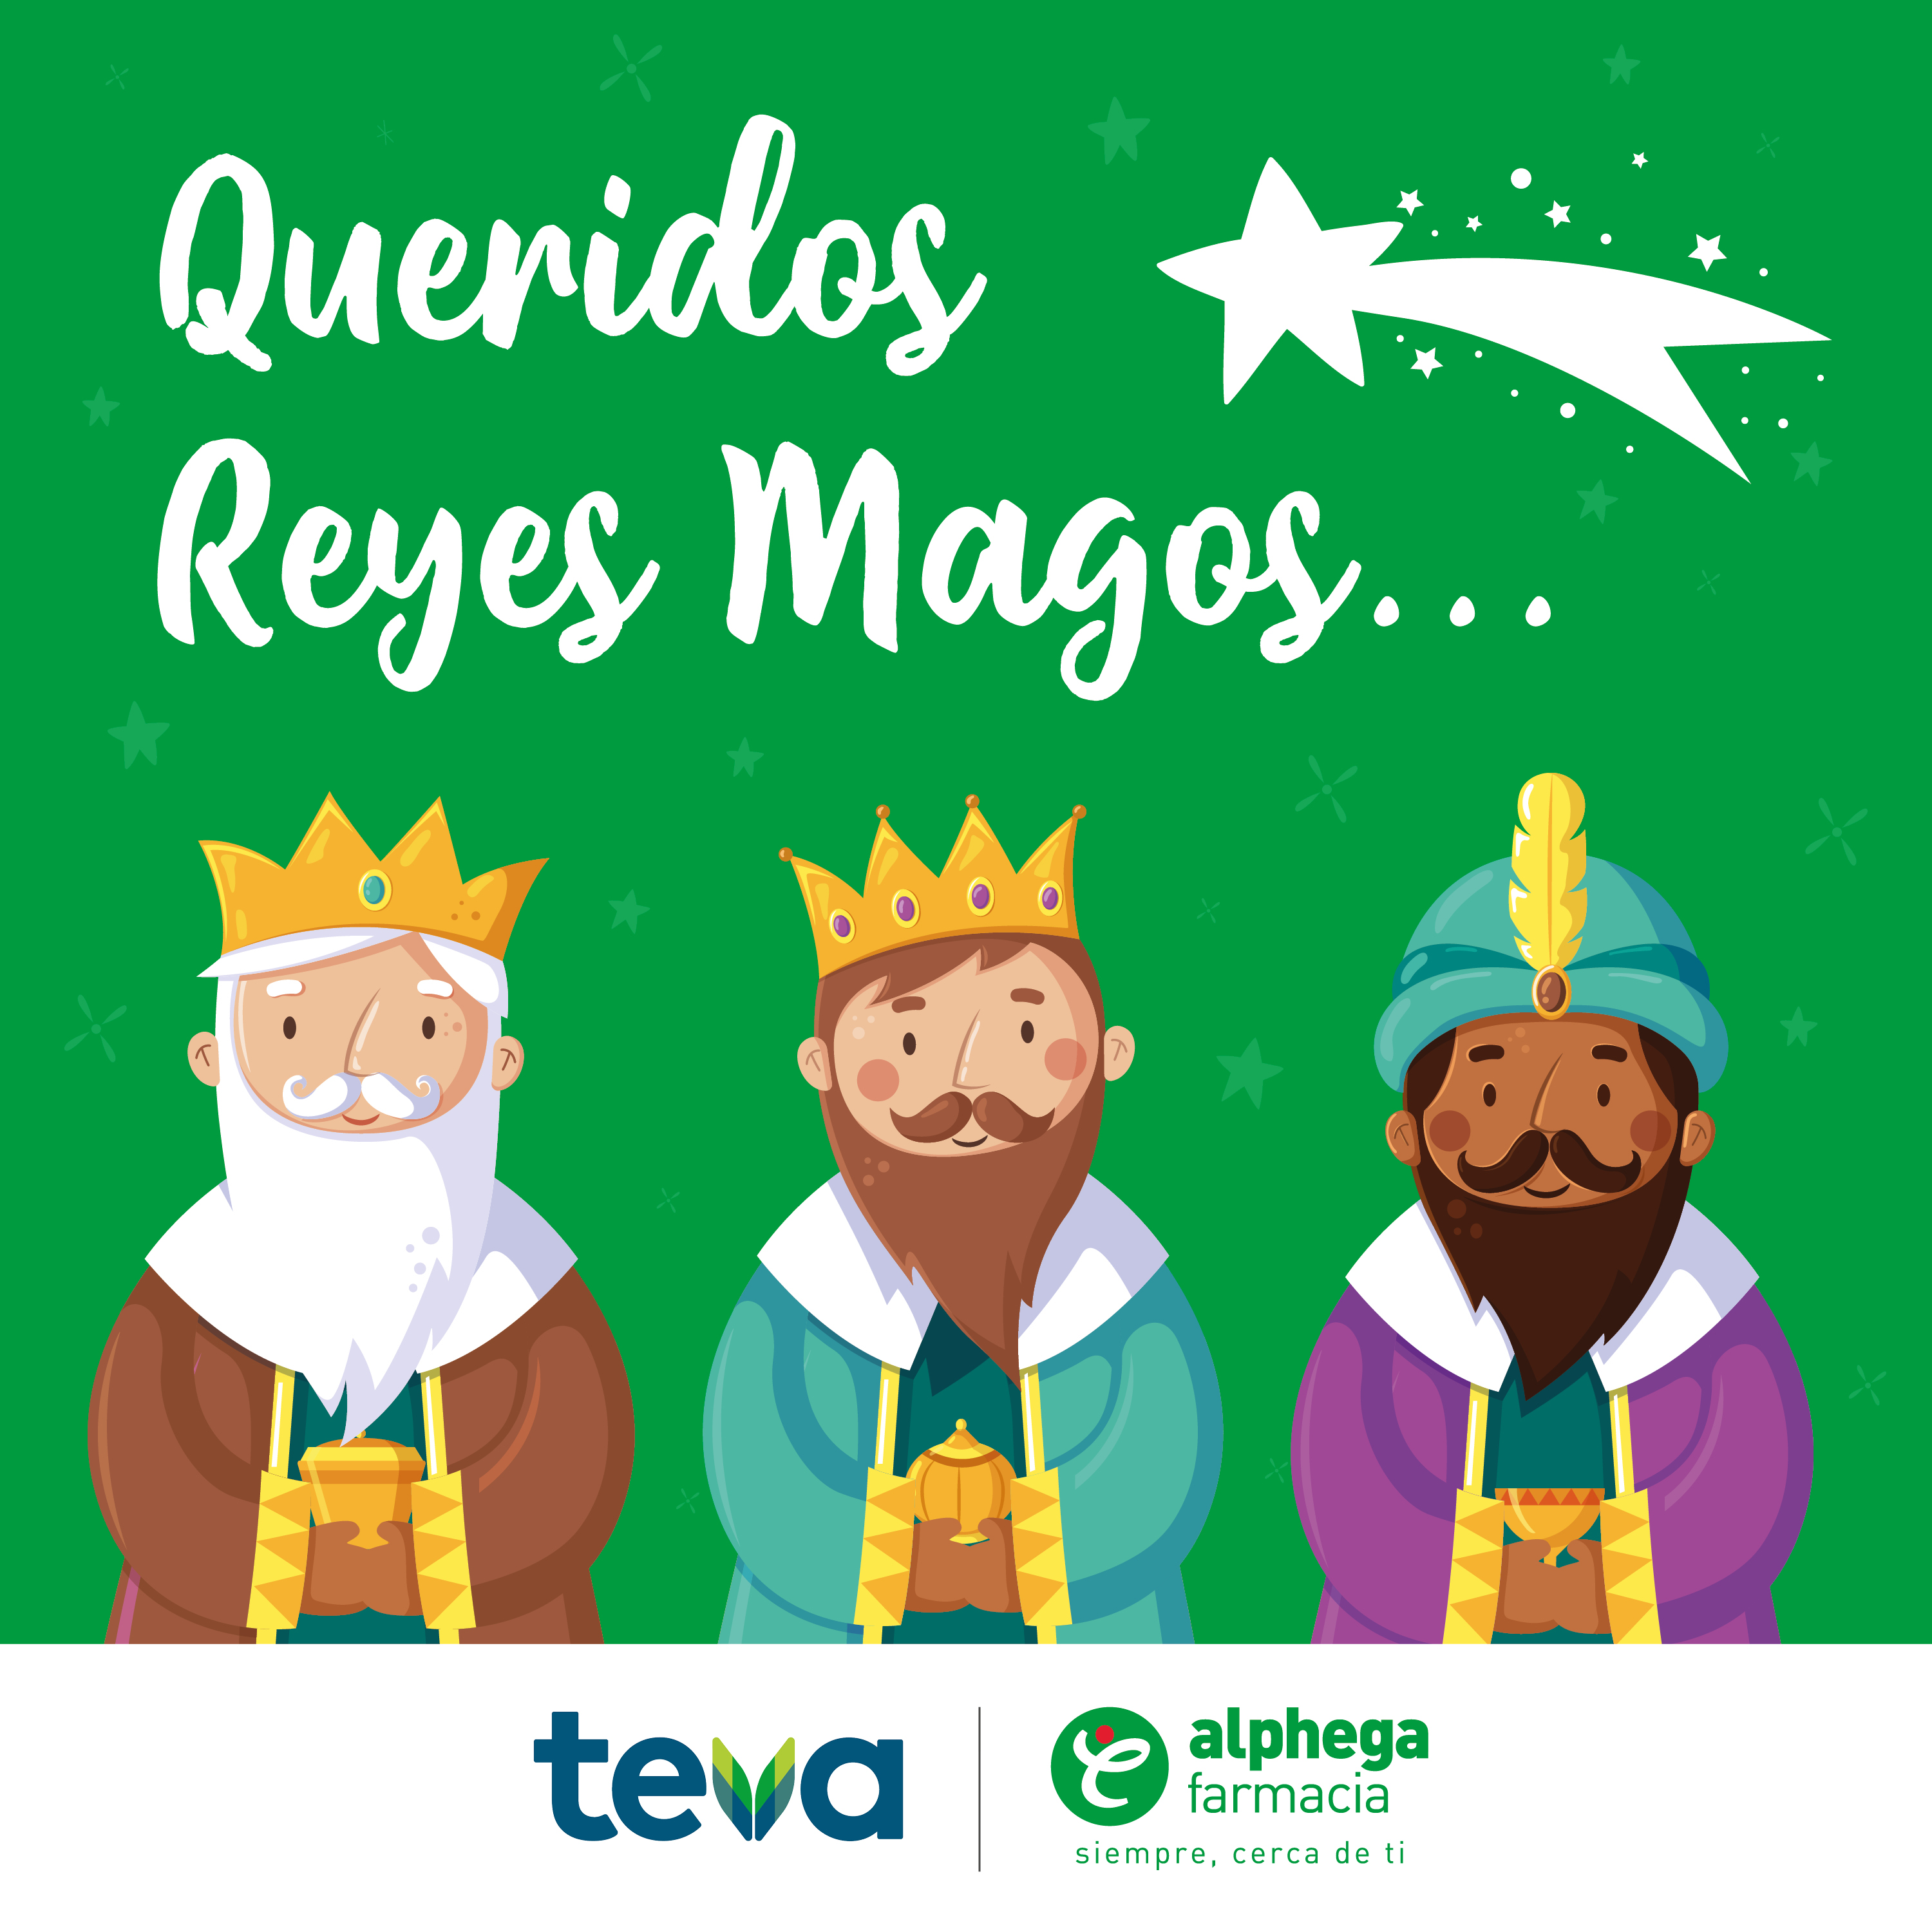 Alphega Farmacia y Teva se unen de nuevo  para acercar los Reyes Magos a las farmacias